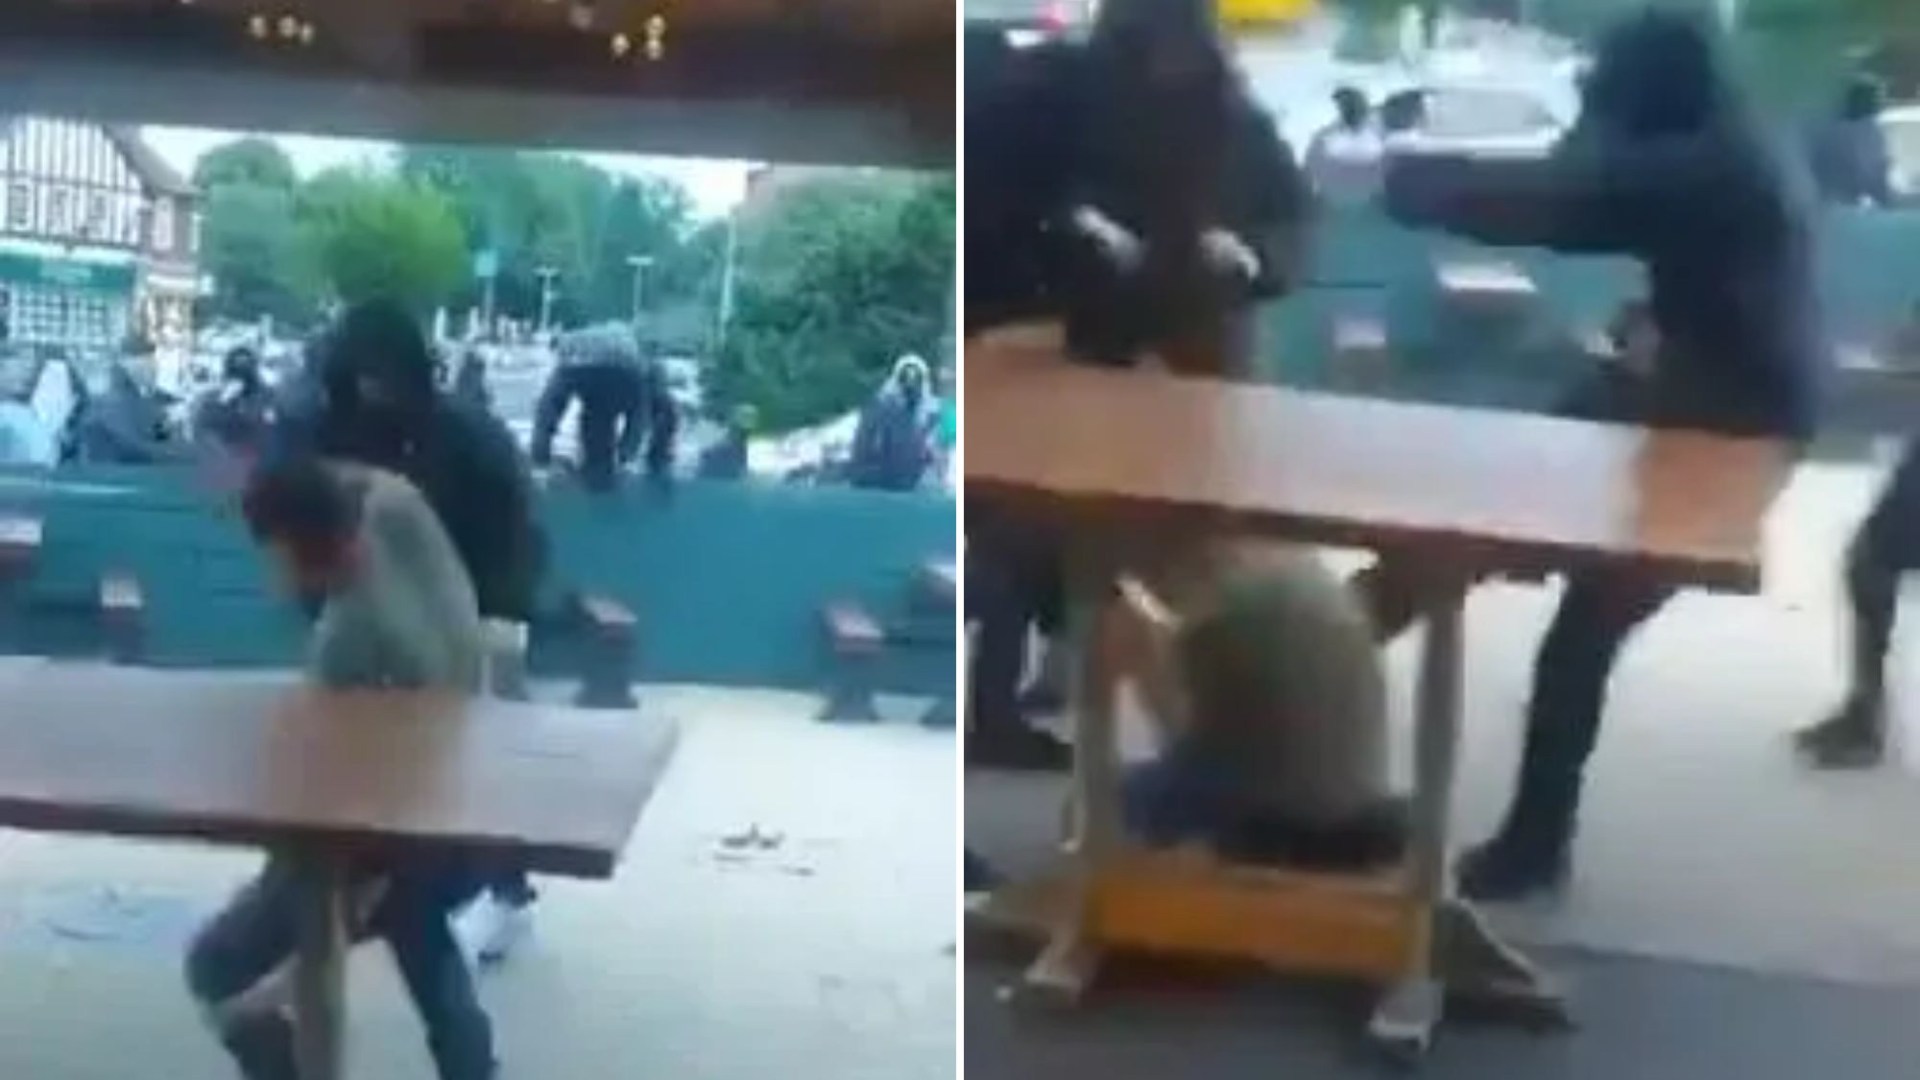 Des images choquantes montrent un gang agitant des drapeaux palestiniens prenant d’assaut un pub avant de jeter un homme au sol et de lui donner un coup de pied à la tête